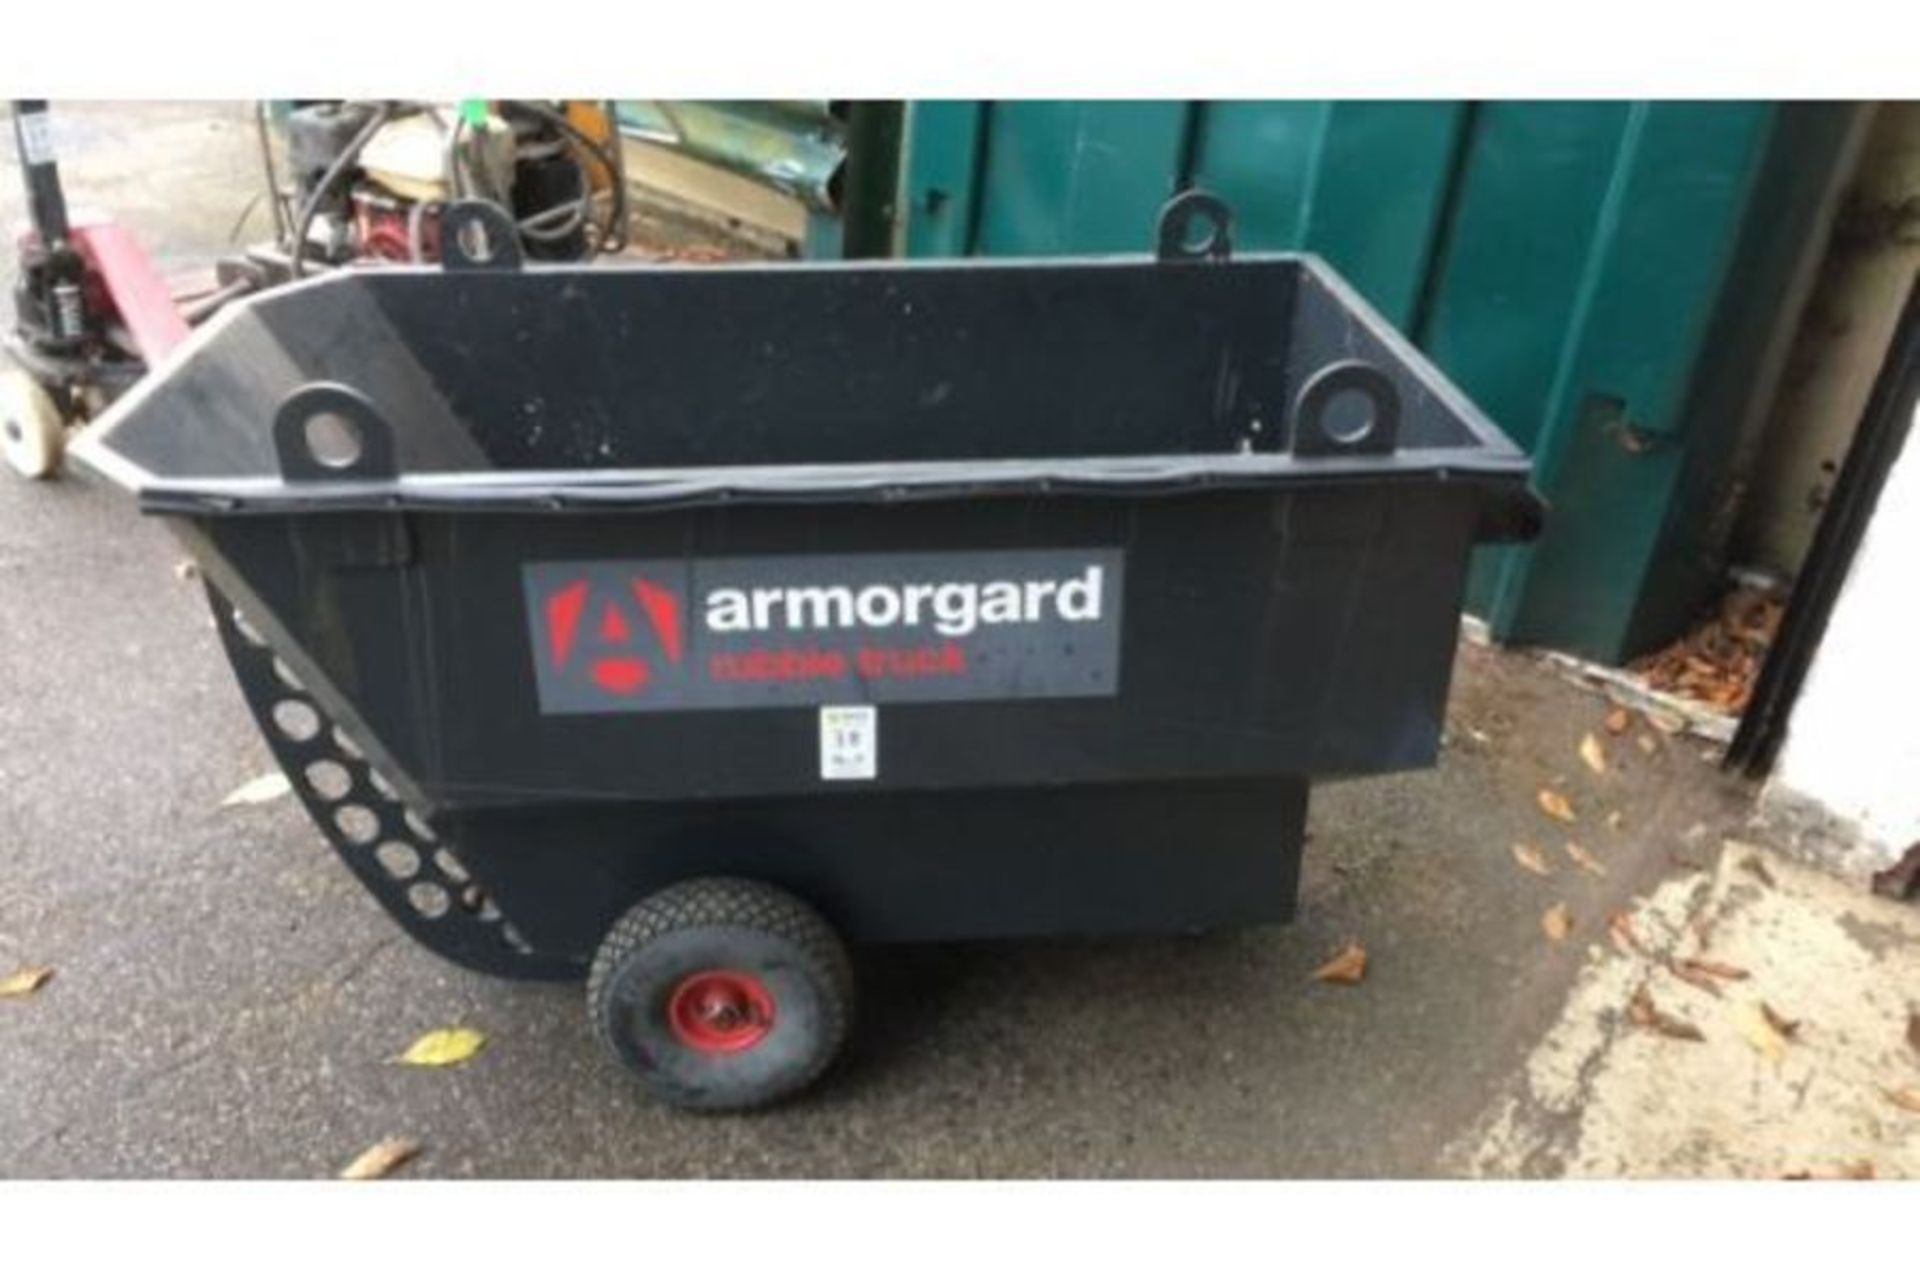 Armorgard rubble truck (999)